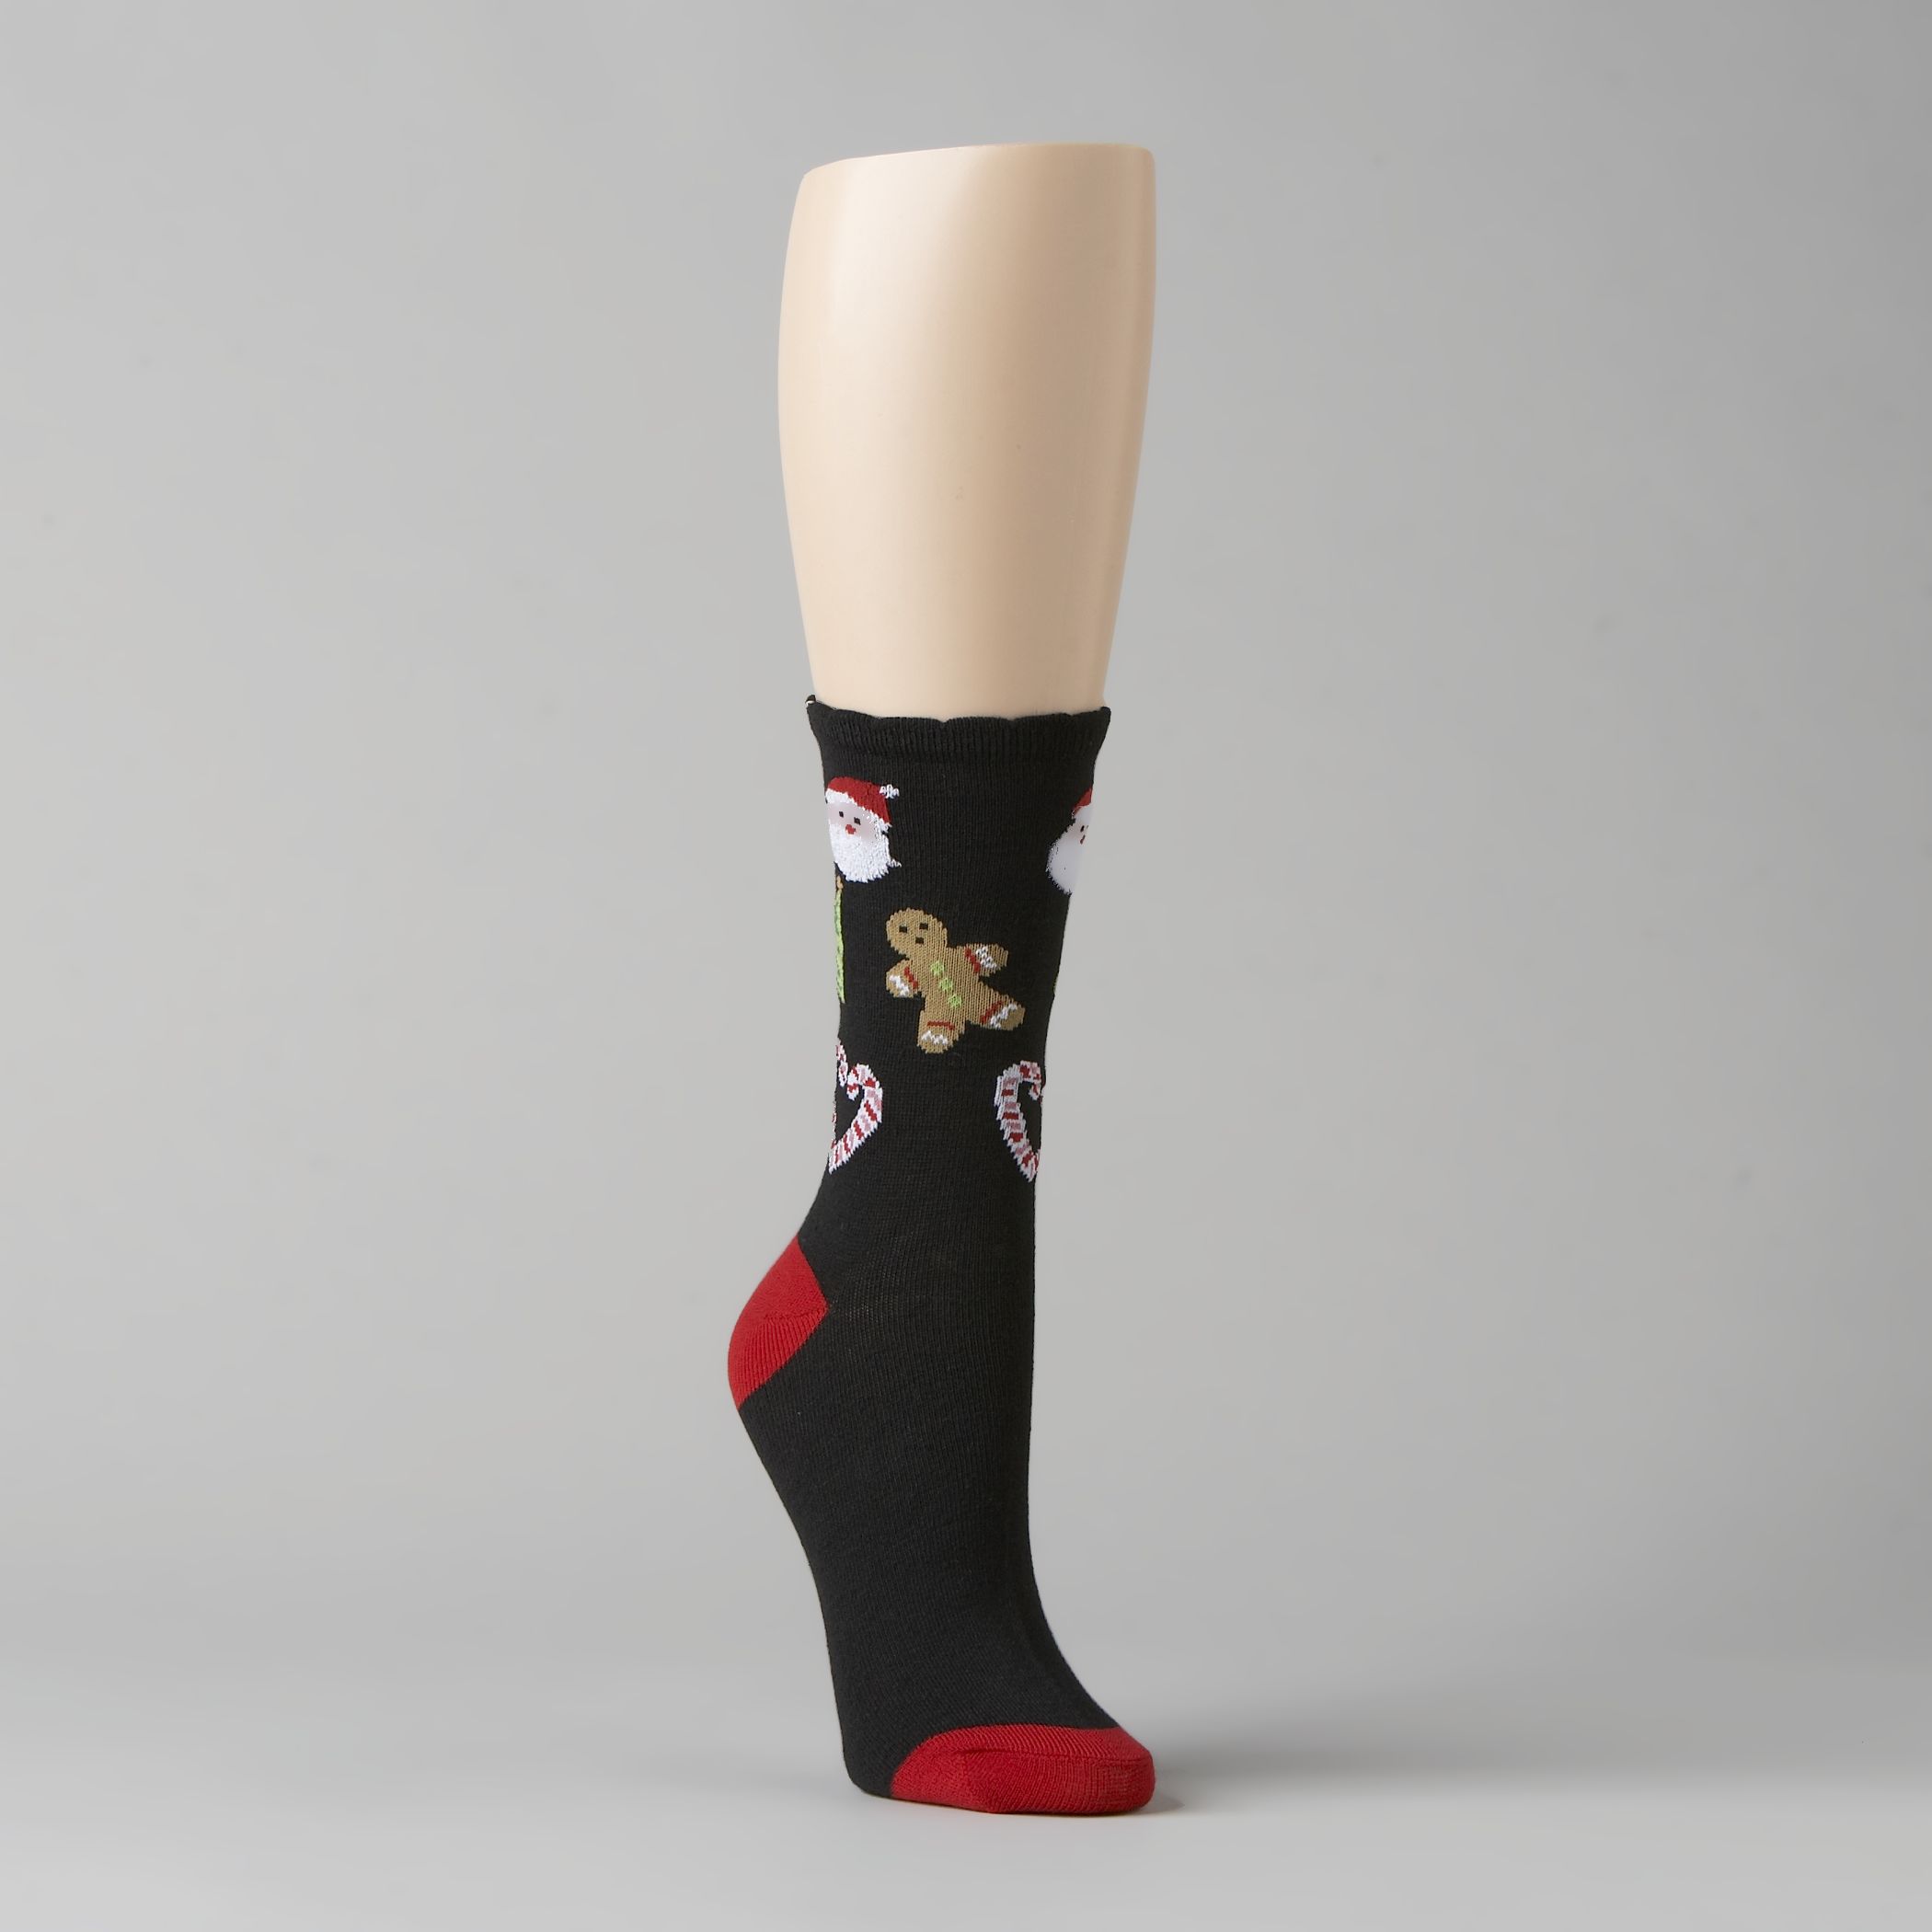 Joe Boxer Women's Socks Christmas Icons Holiday